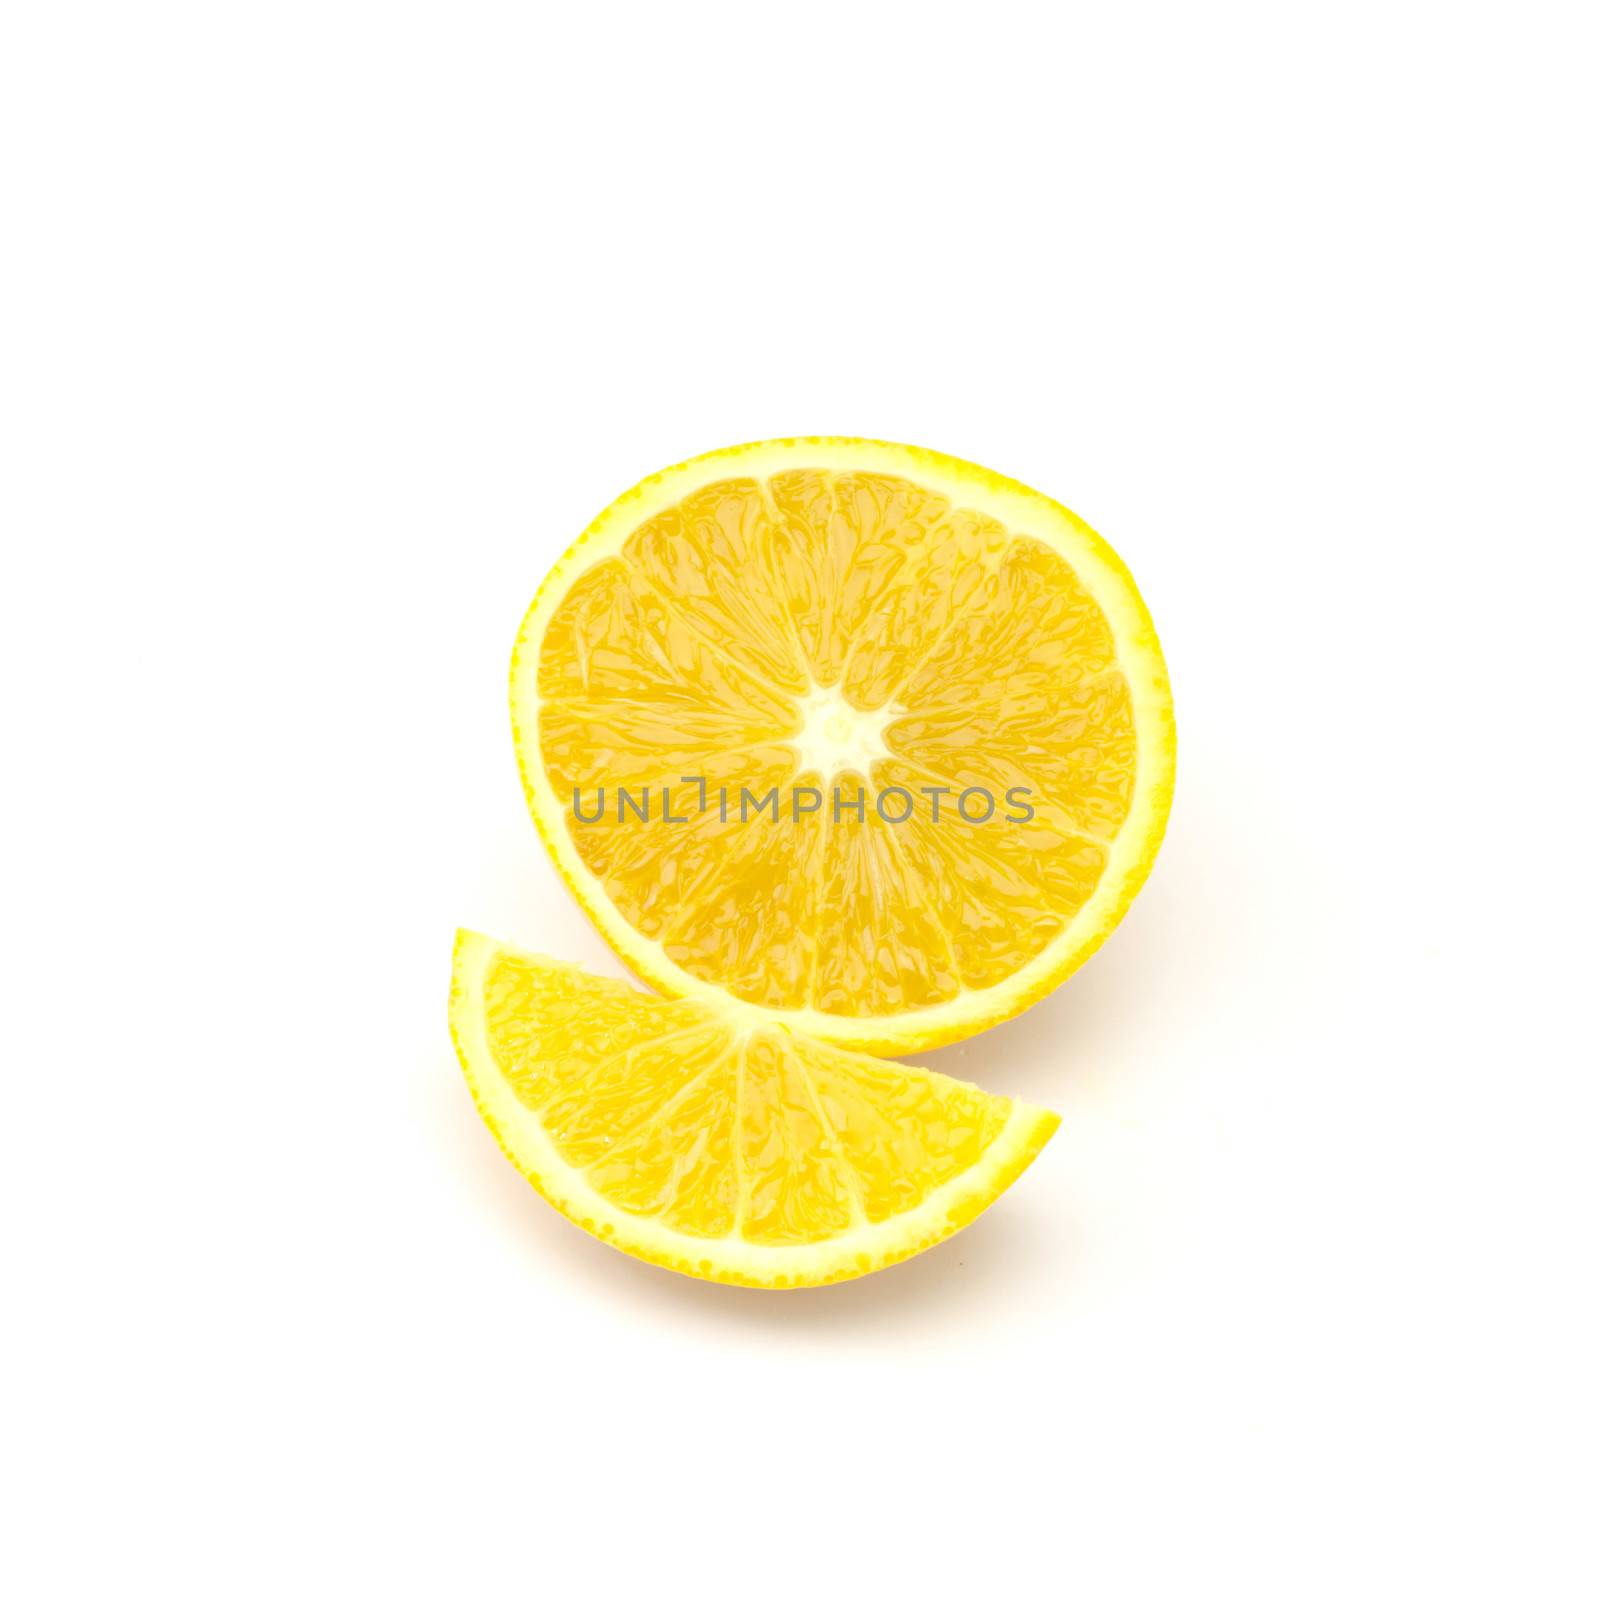 orange fruit isolated on white by ammza12